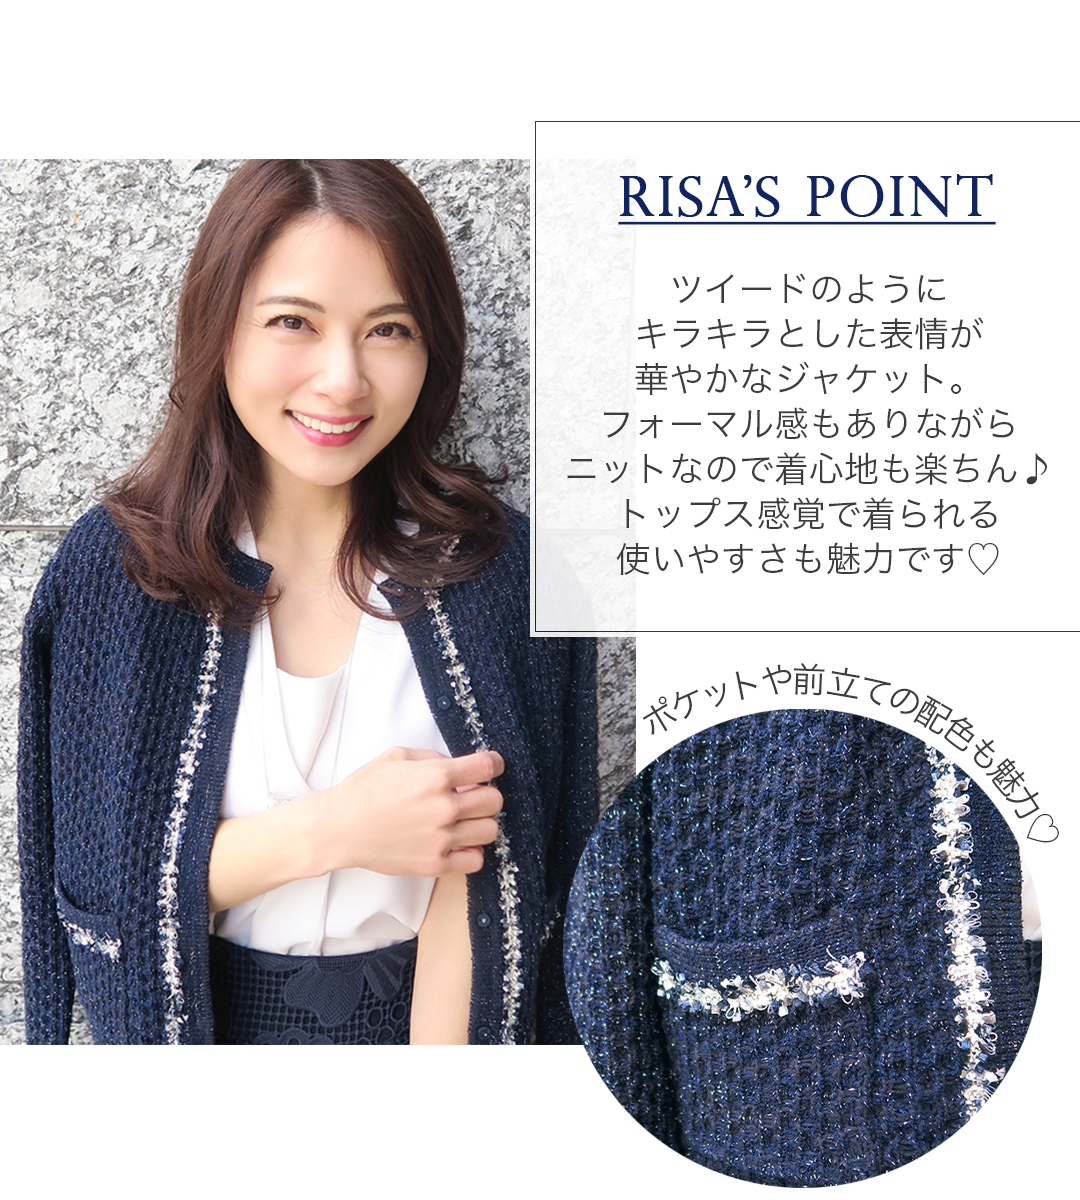 RISA'S POINT
ツイードのようにキラキラとした表情が華やかなジャケット。フォーマル感もありながらニットなので着心地も楽ちん！トップス感覚で着られる使いやすさも魅力です